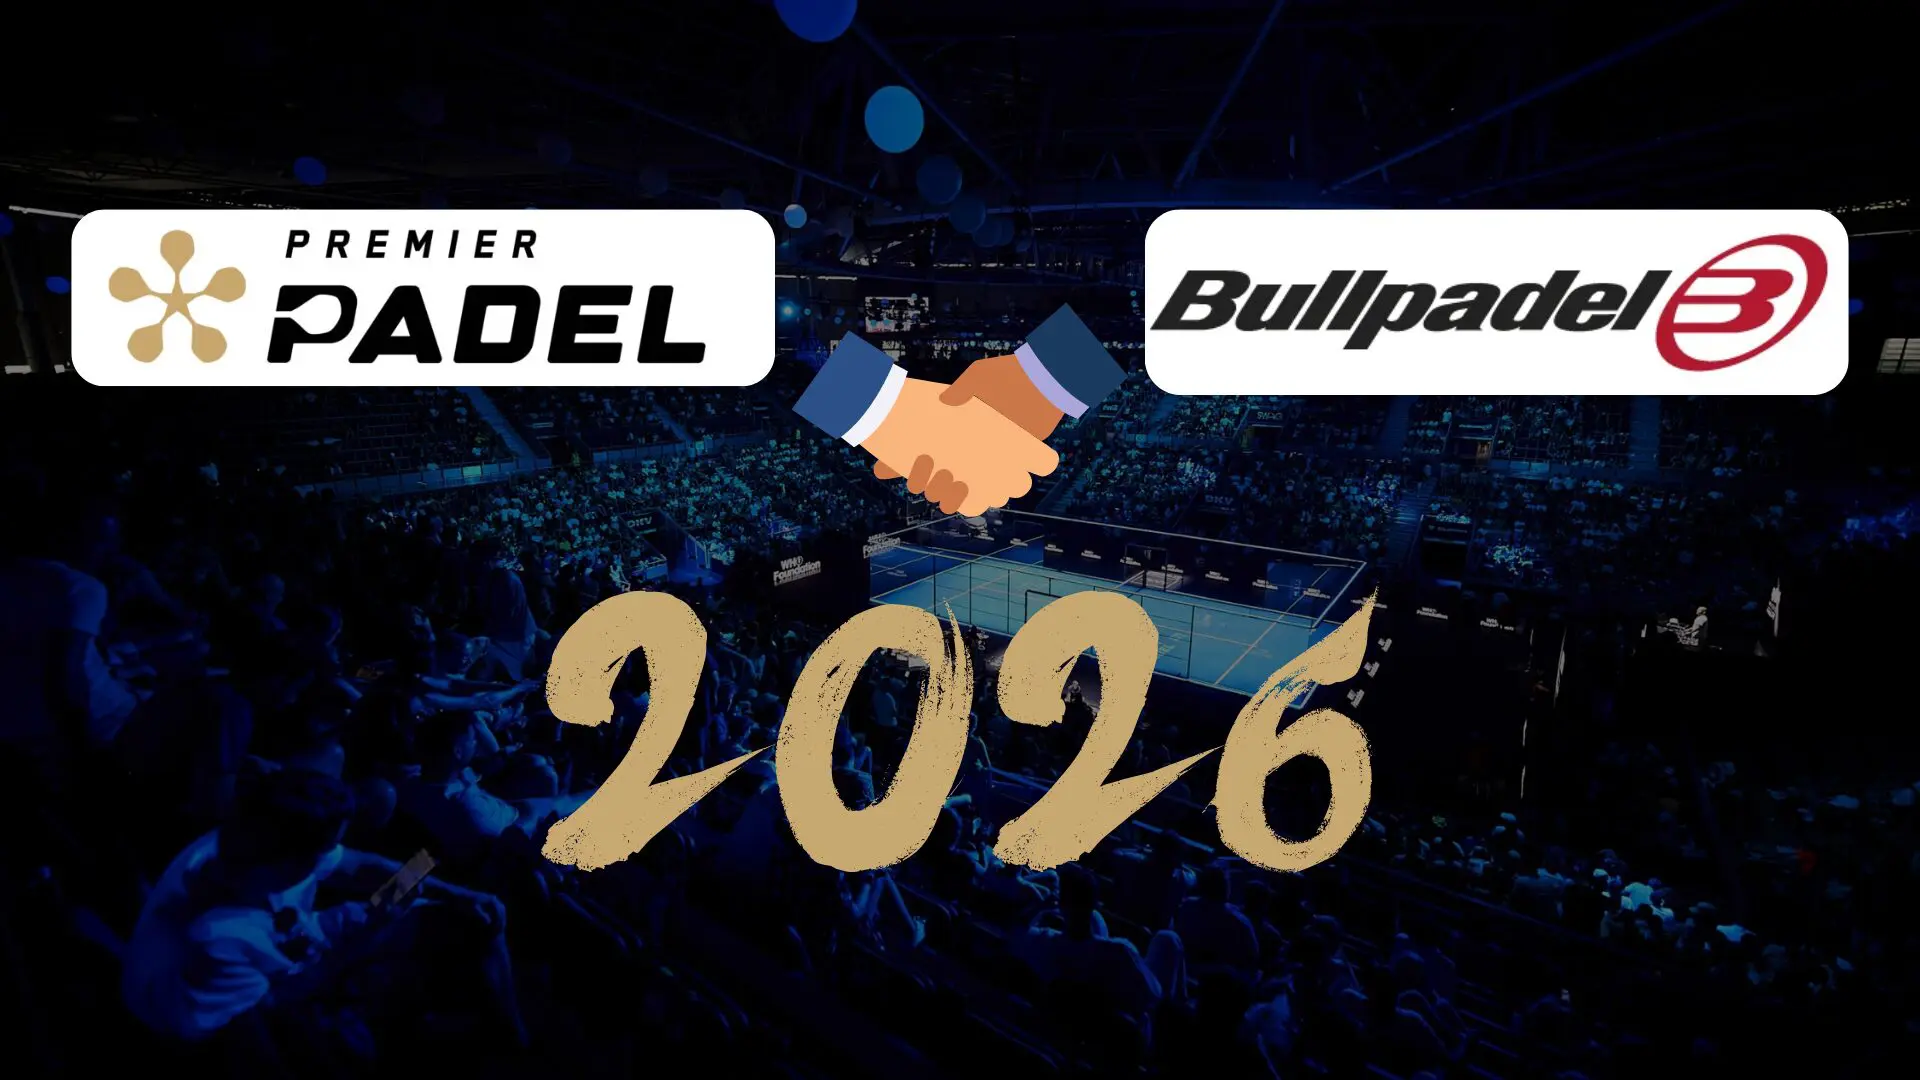 Bullpadel vil give de officielle ketsjere af Premier Padel indtil 2026!